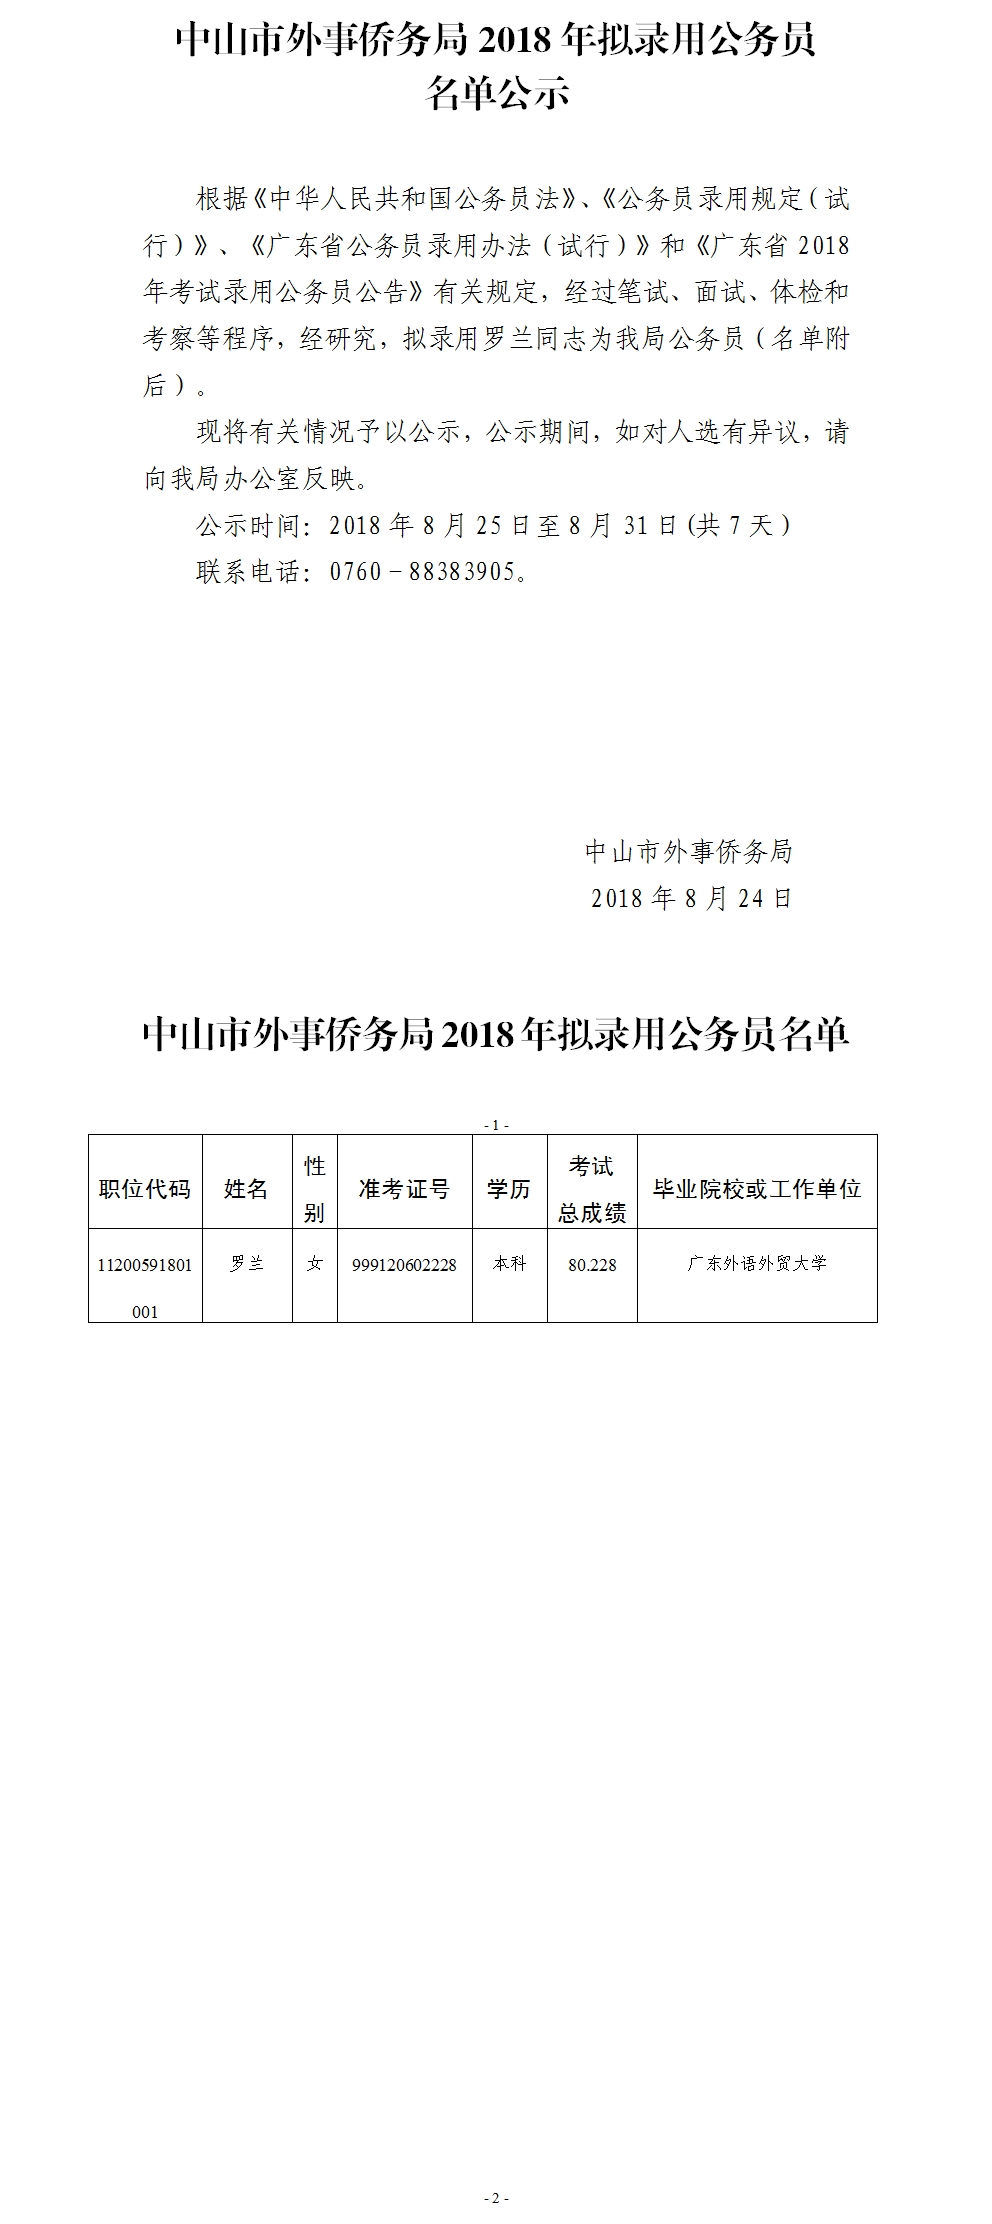 2018年中山市外事侨务局拟录用公务员公示